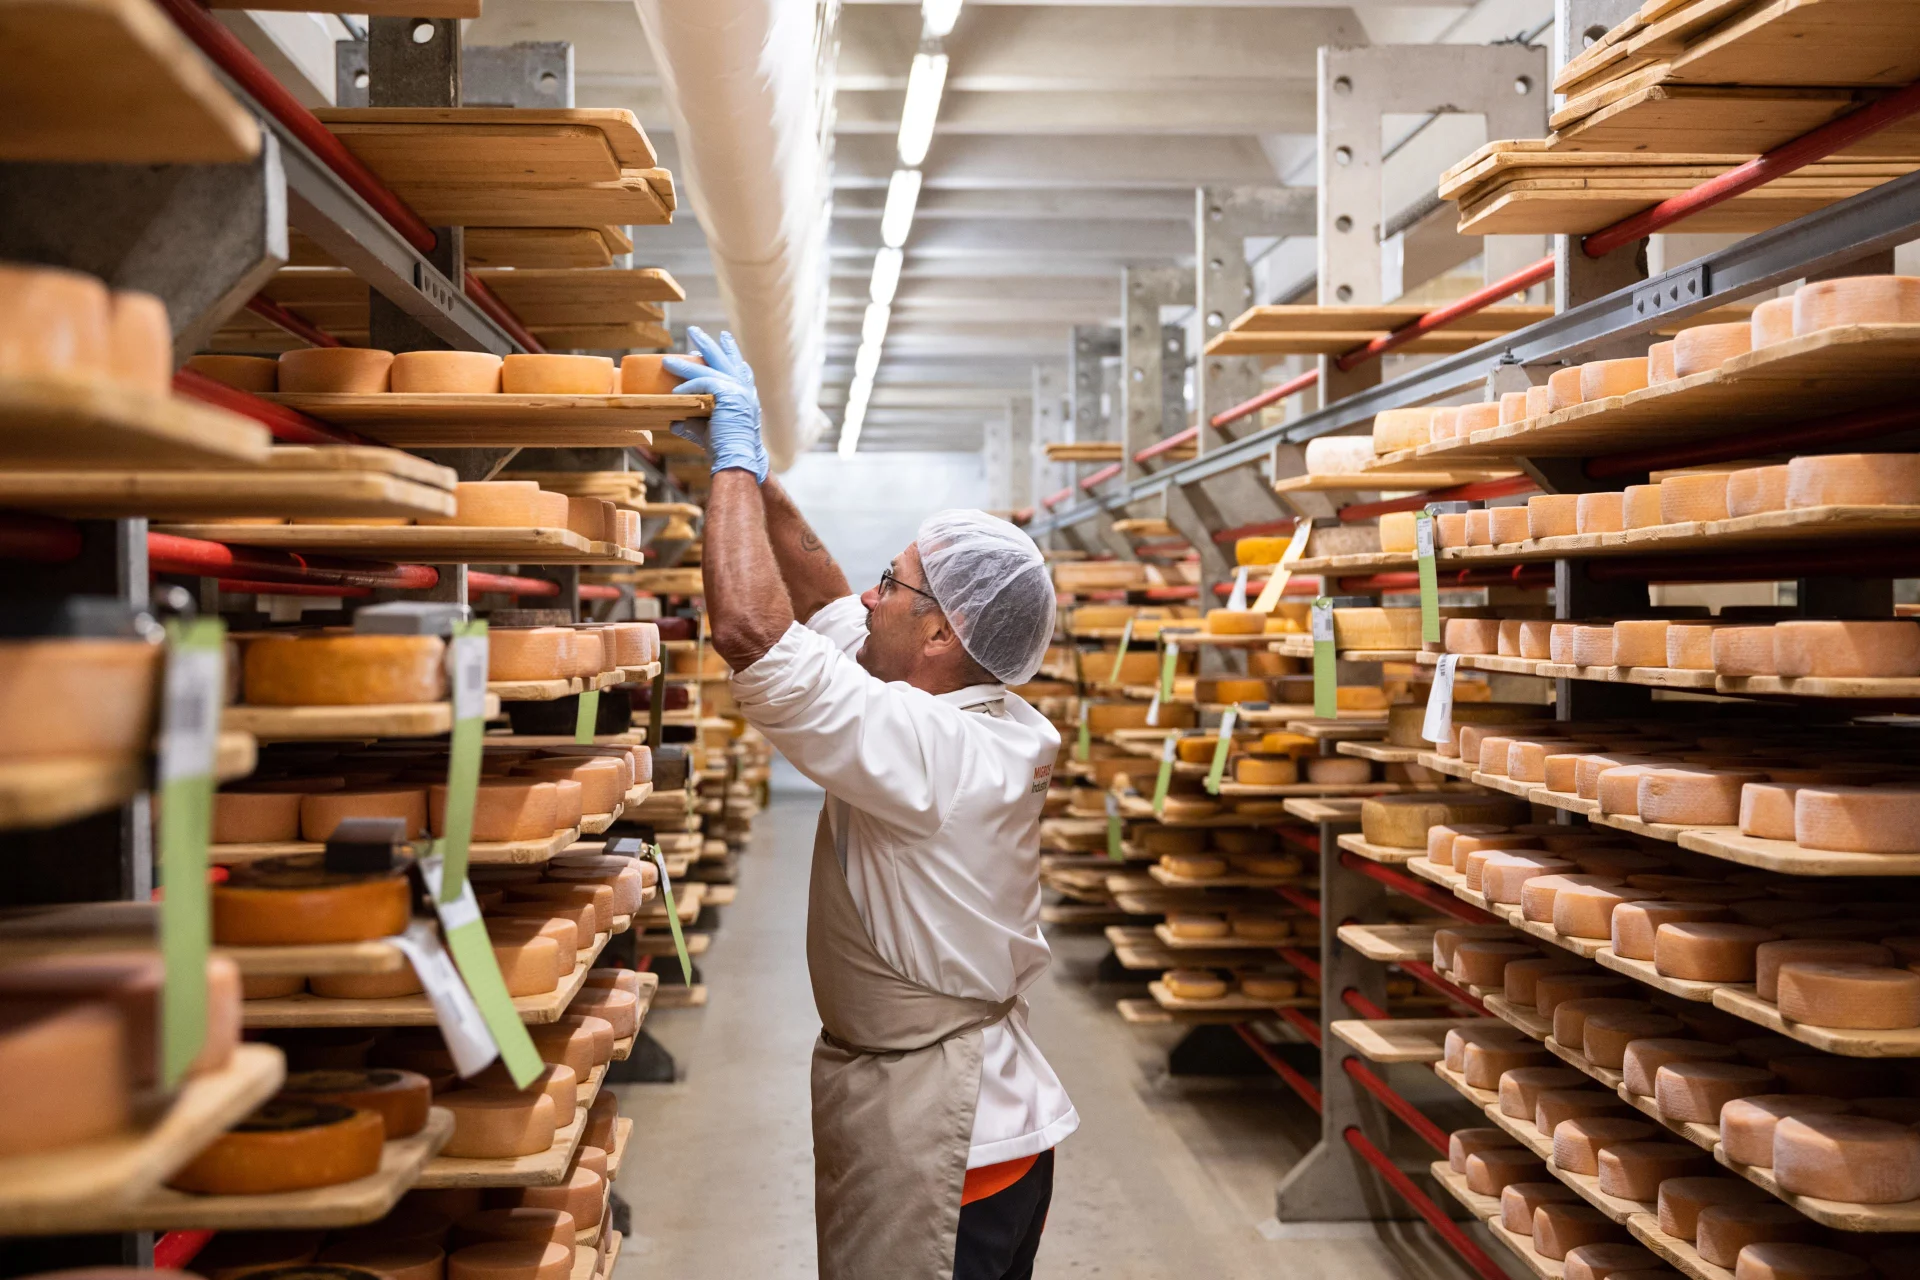 Un dipendente porta le forme di formaggio al magazzino del formaggio per farle stagionare